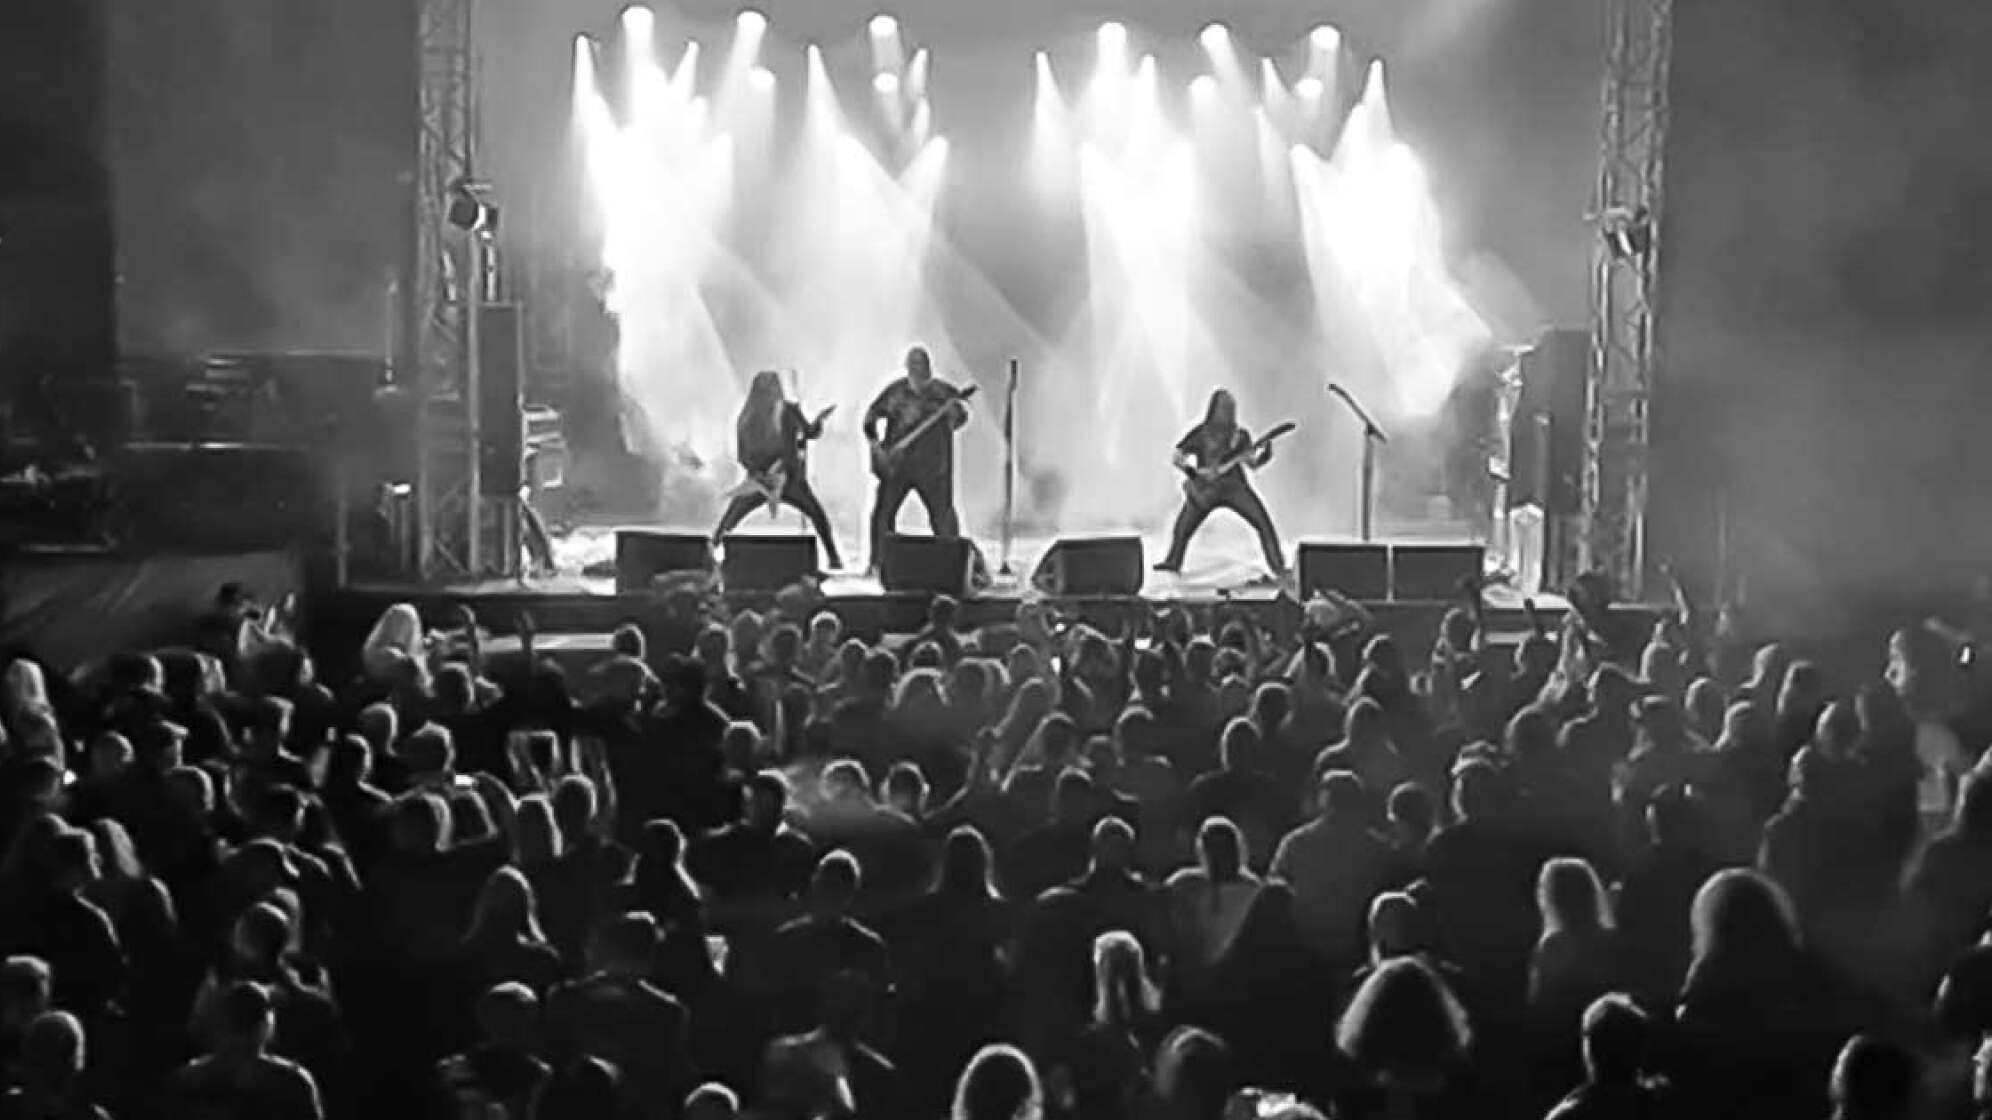 Bild von der Bühne des MOA-Festivals mit Zuschauern und einer Band